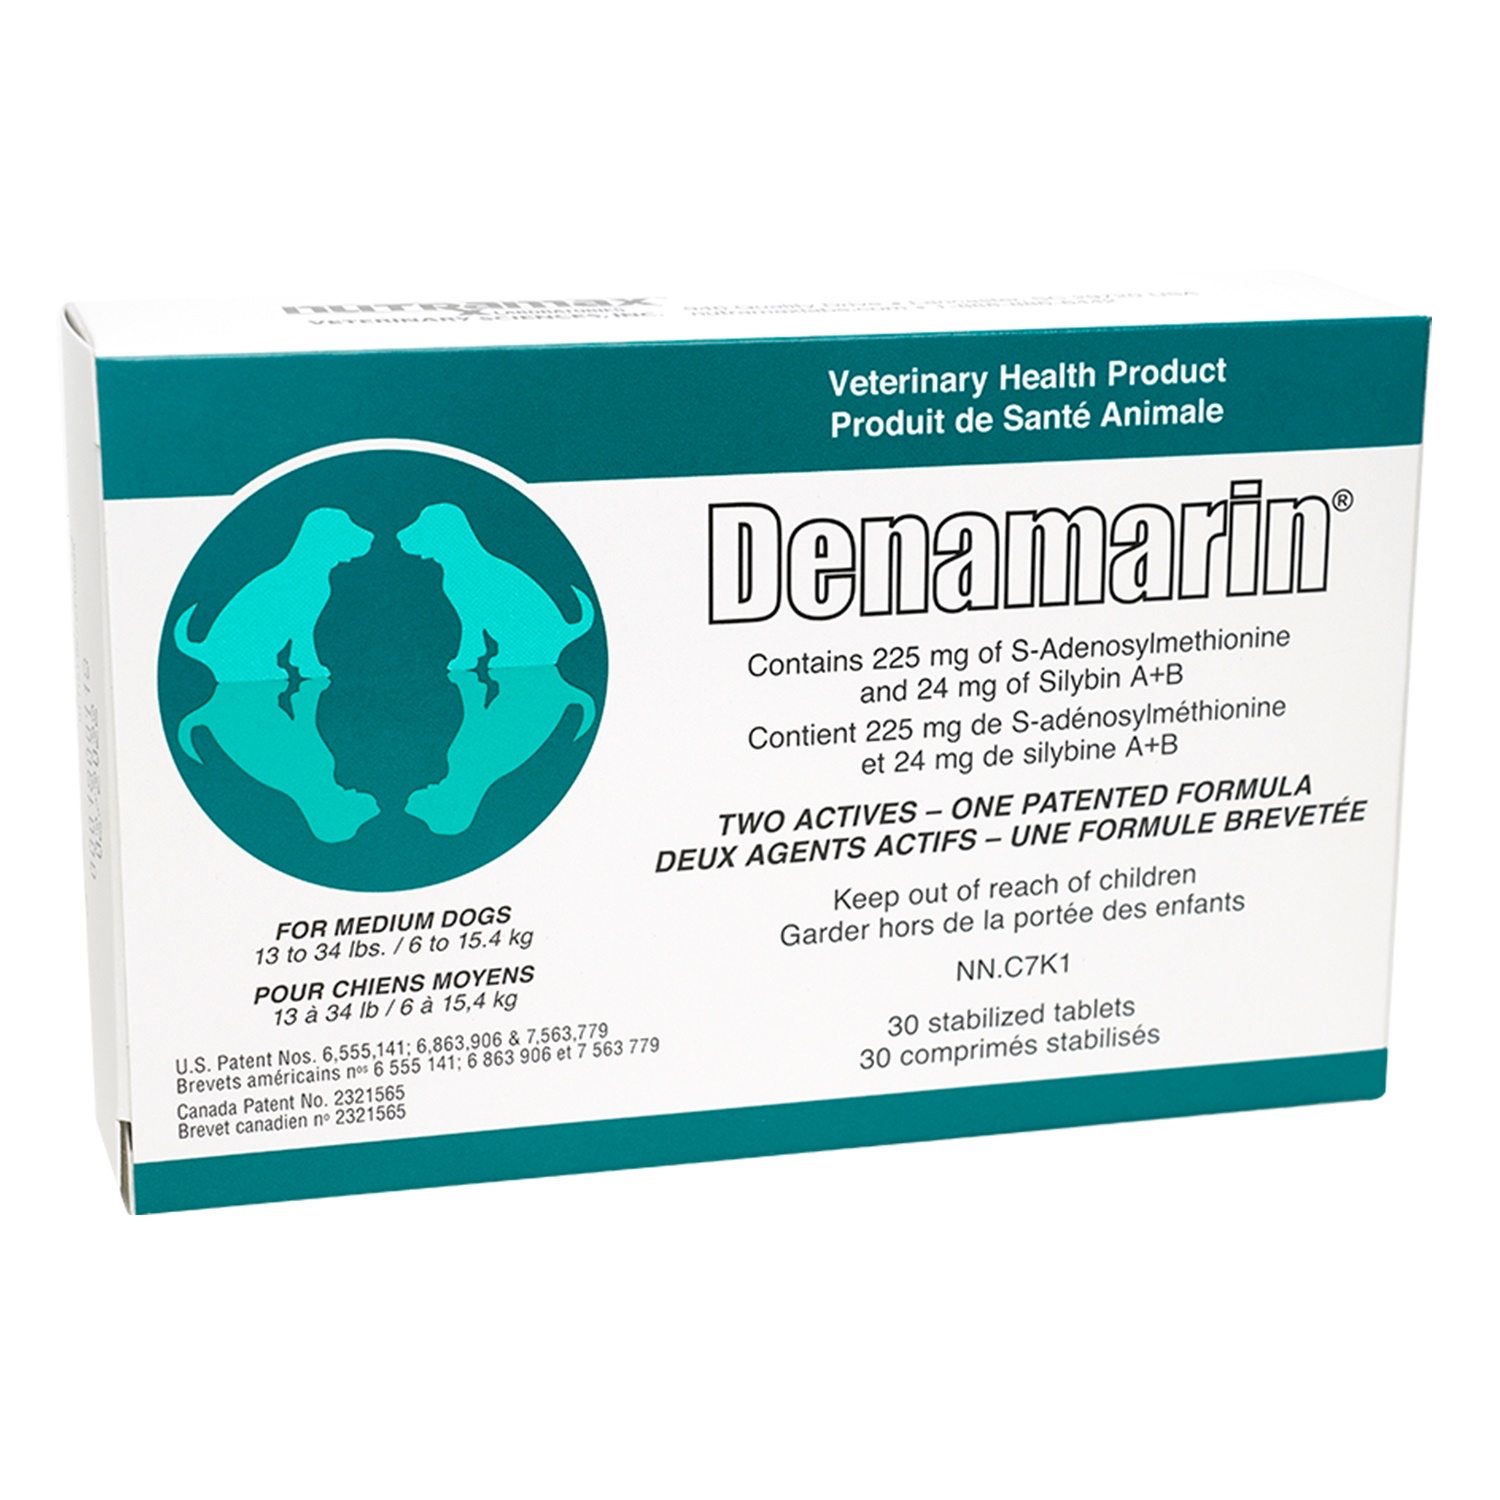 Where To Buy Denamarin